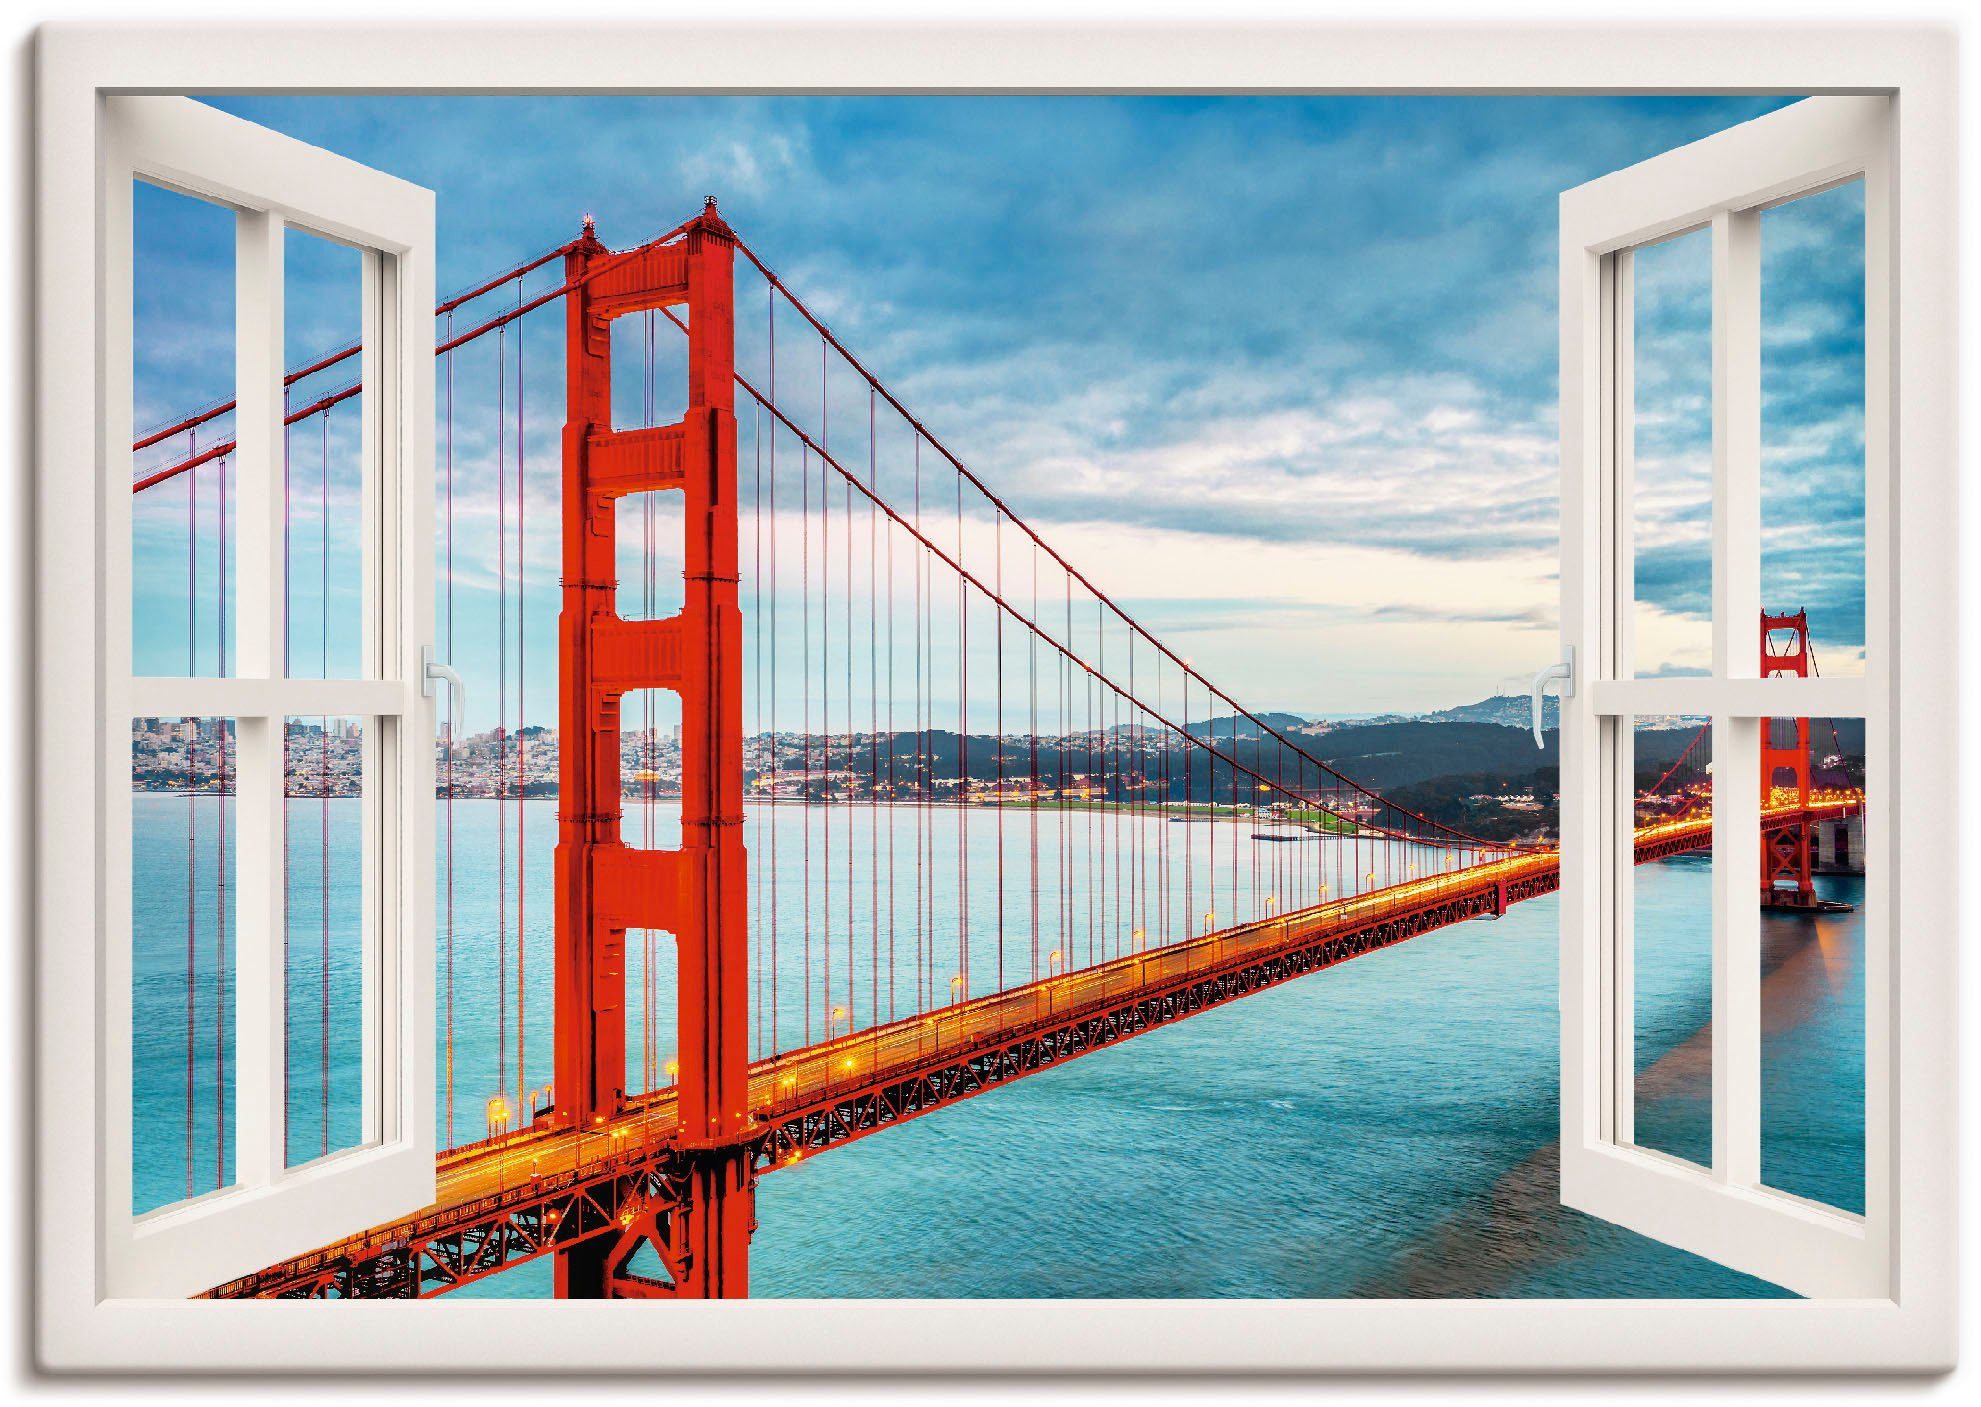 Artland Artprint Blik uit het venster Golden Gate Bridge in vele afmetingen & productsoorten - artprint van aluminium / artprint voor buiten, artprint op linnen, poster, muursticke